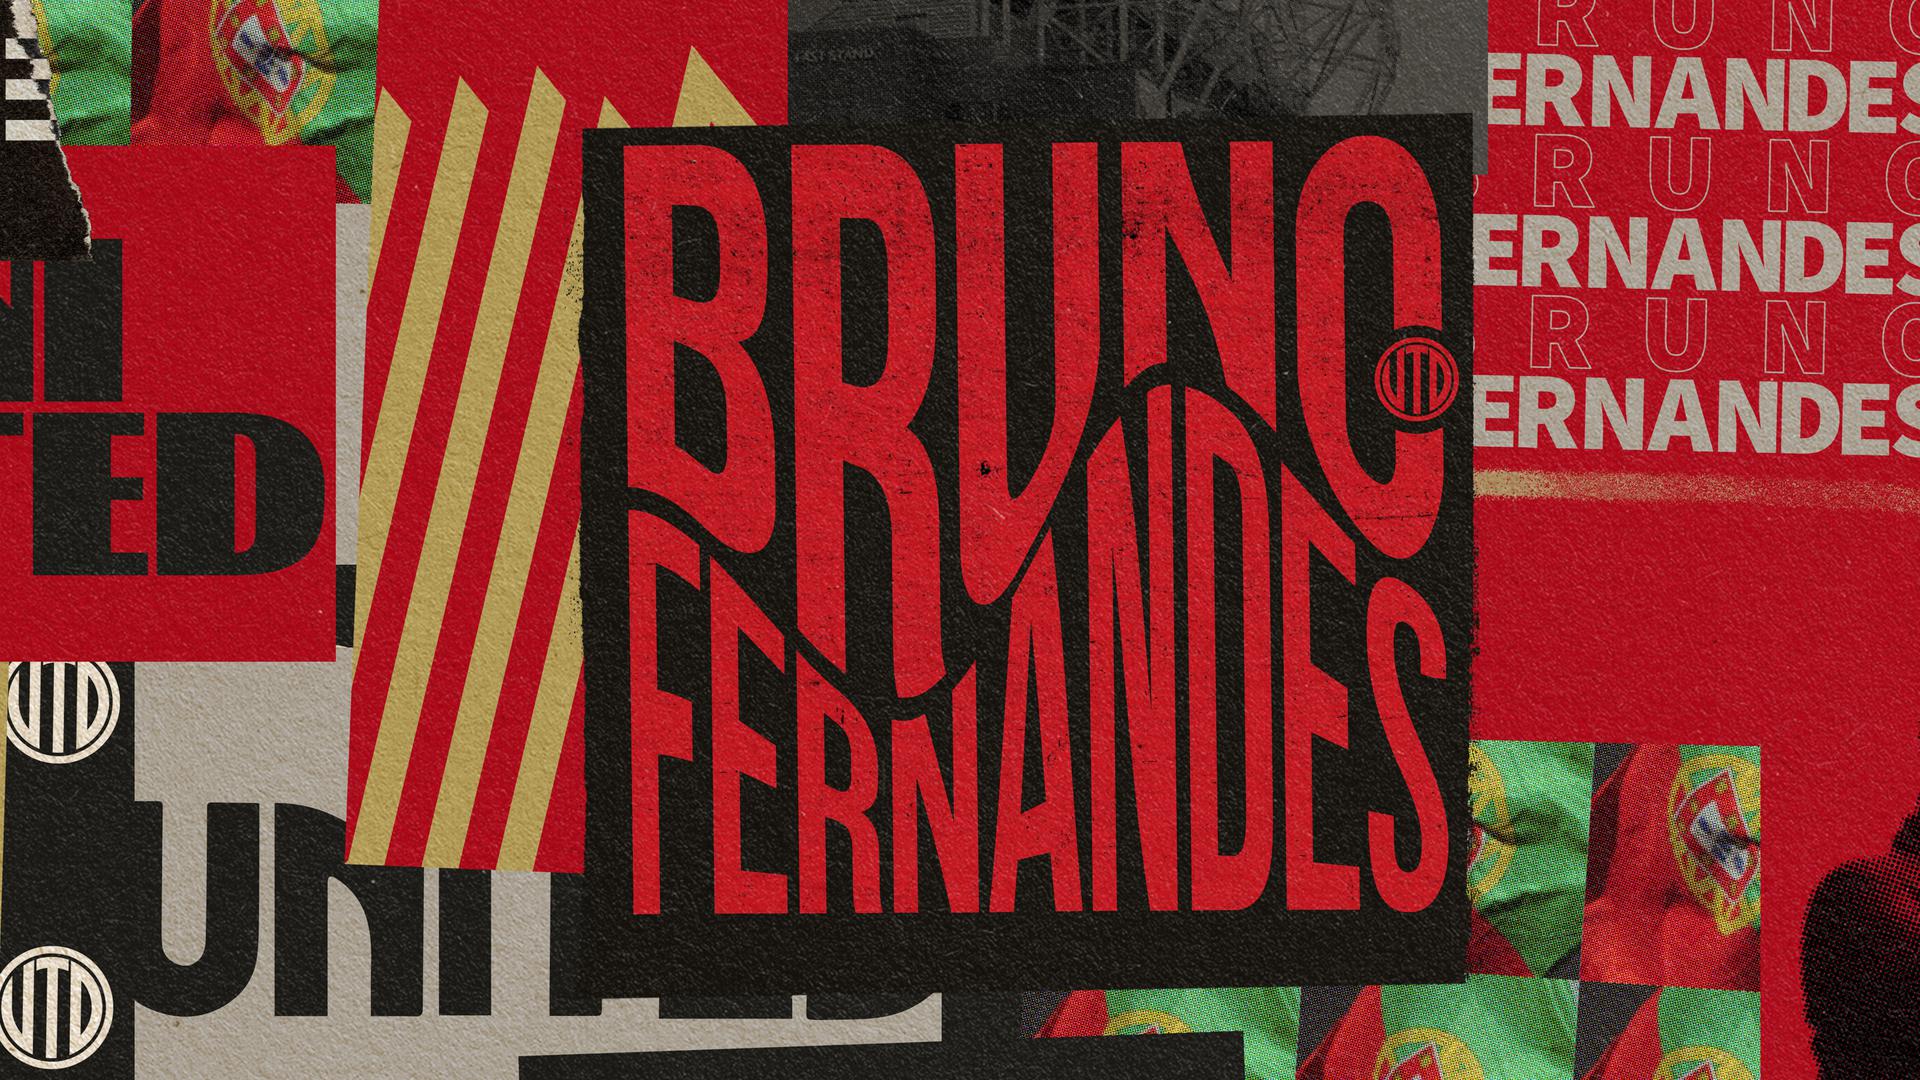 Man Utd agree deal to sign Bruno Fernandes